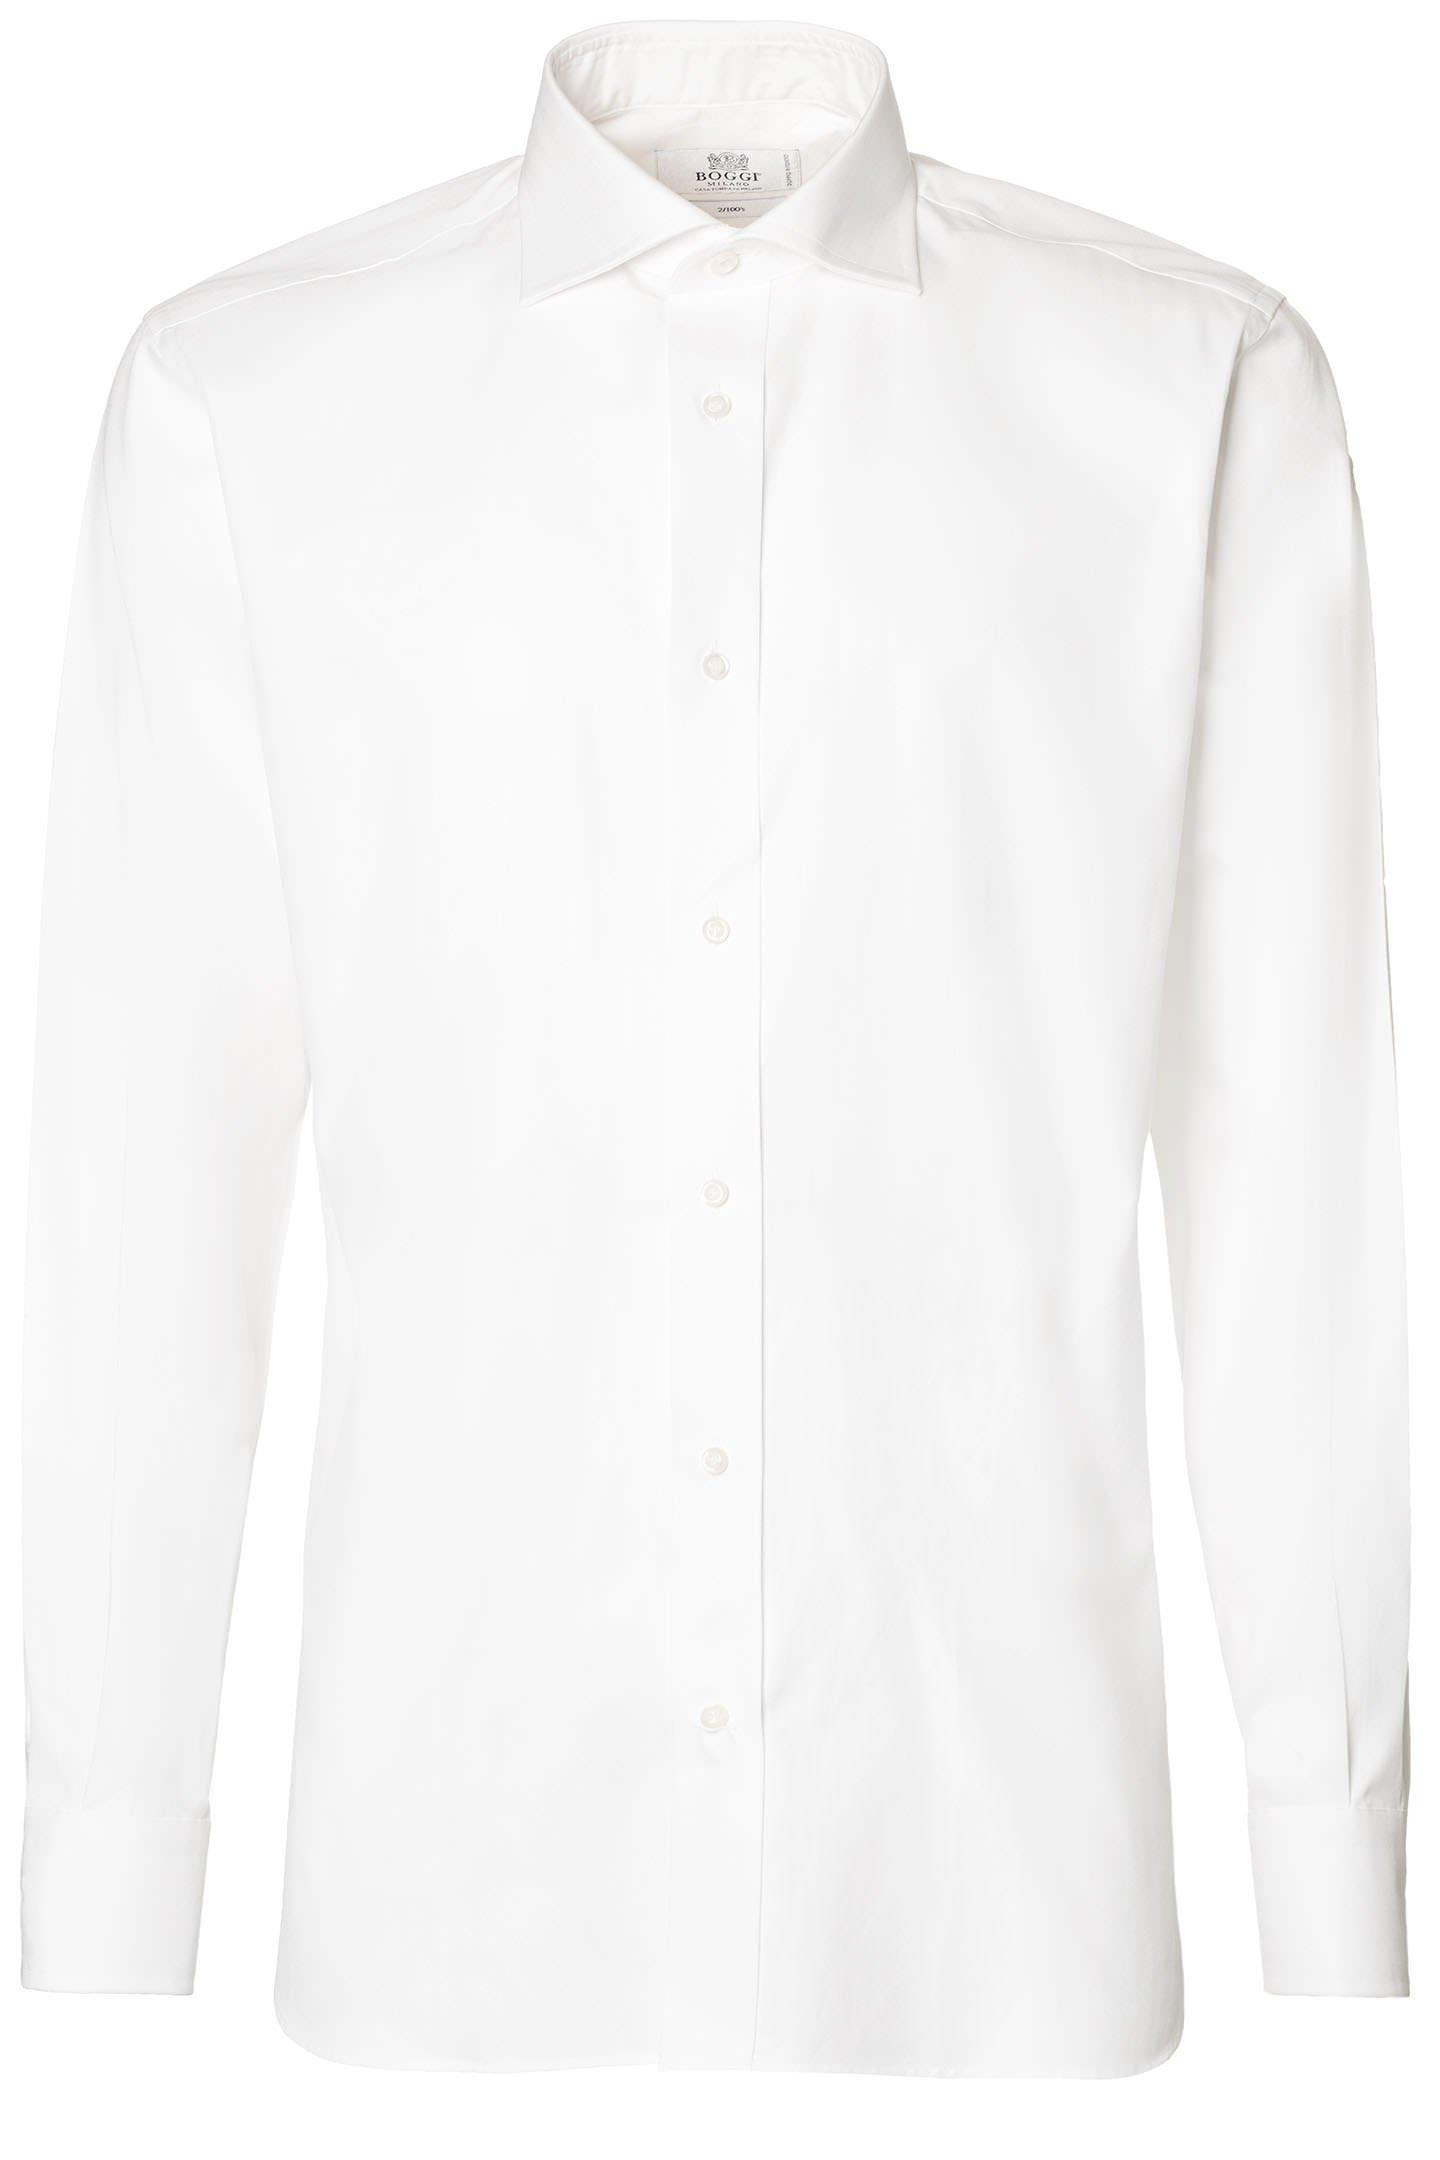 Boggi Milano - White Two Ply Twill Cotton Shirt